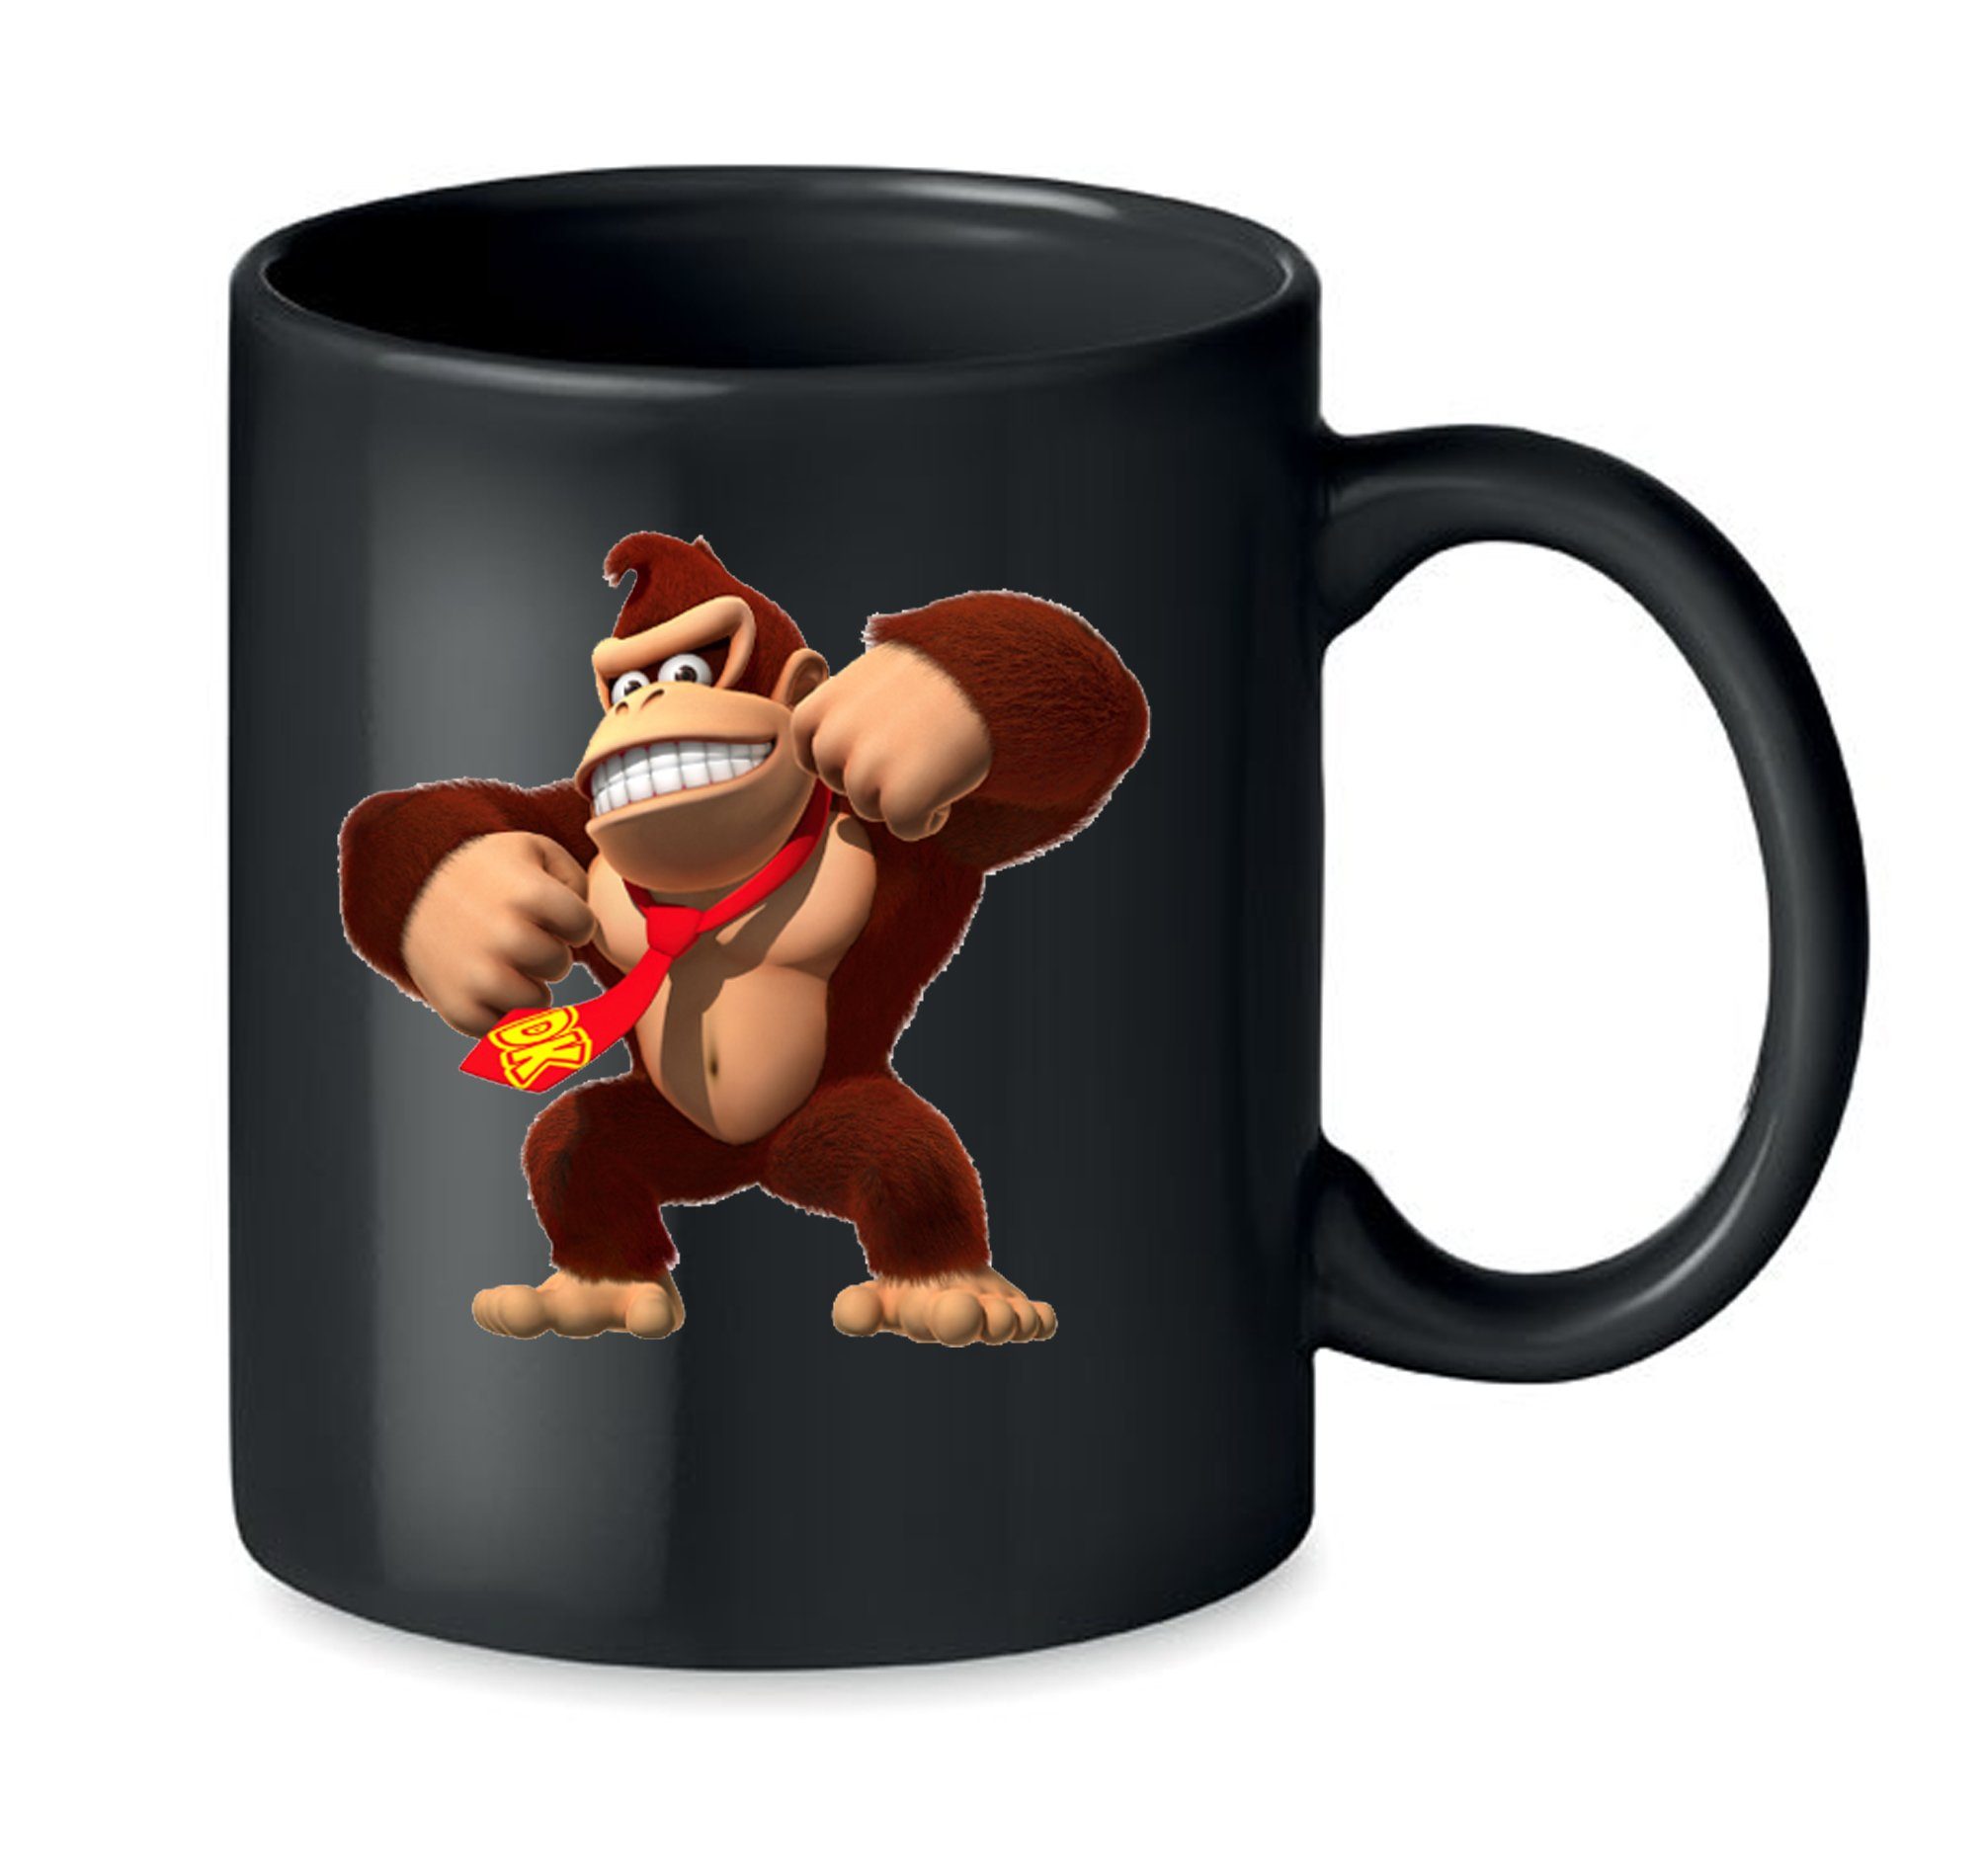 Blondie & Brownie Tasse Donkey Kong Gorilla Affe Nintendo in Schwarz und Weiß, Keramik, Spühlmaschinenfest